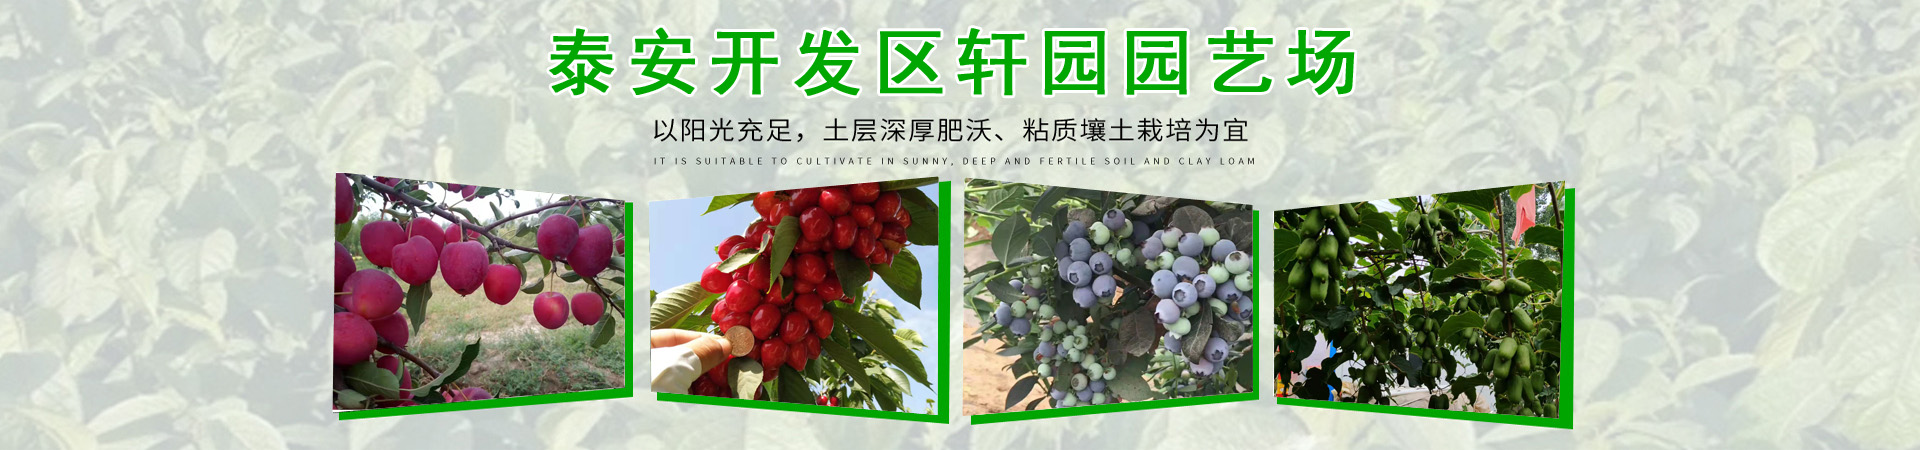 蓝莓苗、云南本地蓝莓苗、云南、云南蓝莓苗